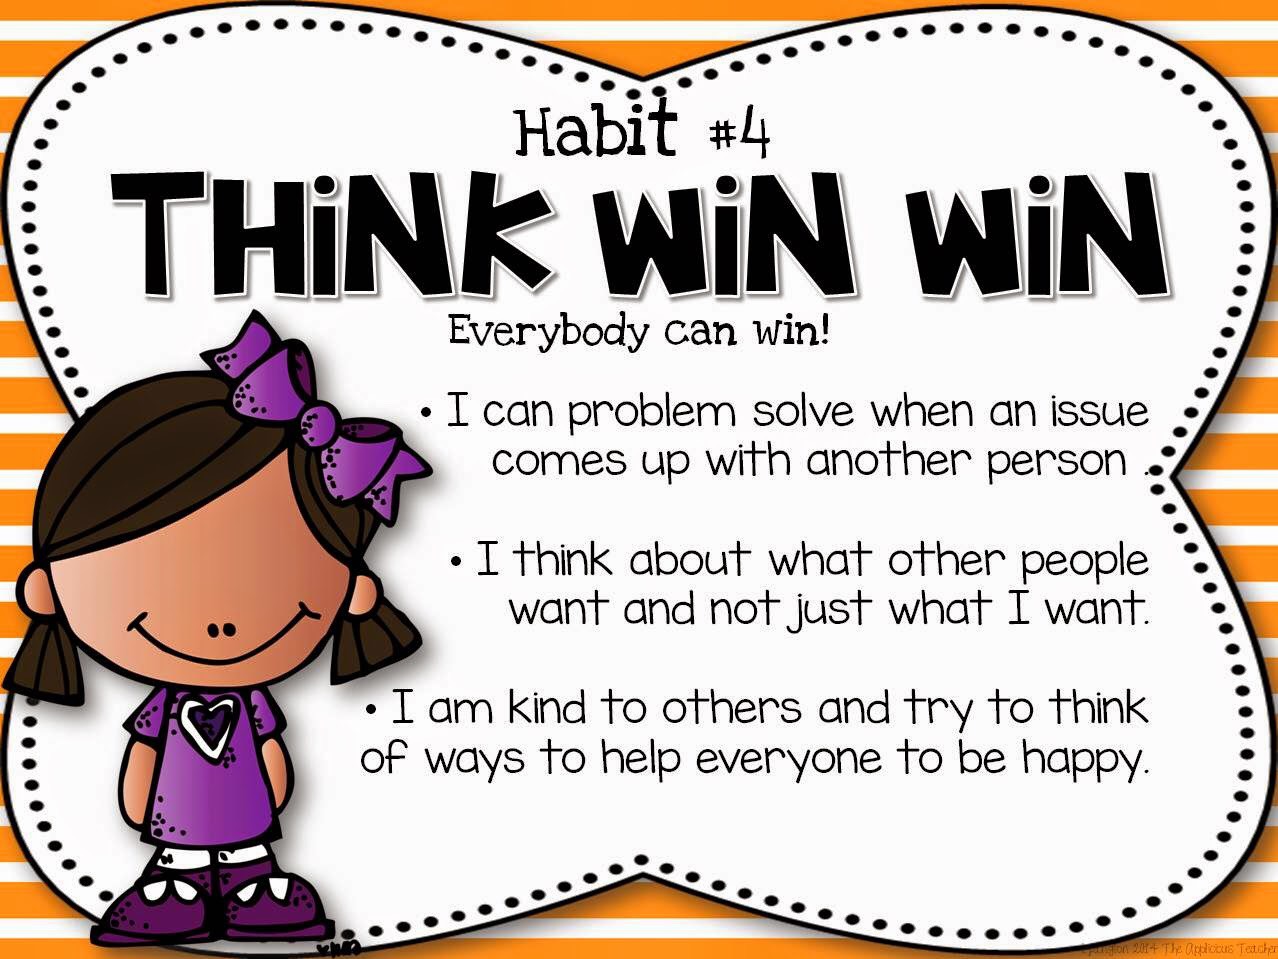 Everybody be happy. Think win win. Habit. Thinking Habits книга. Habitual activity.